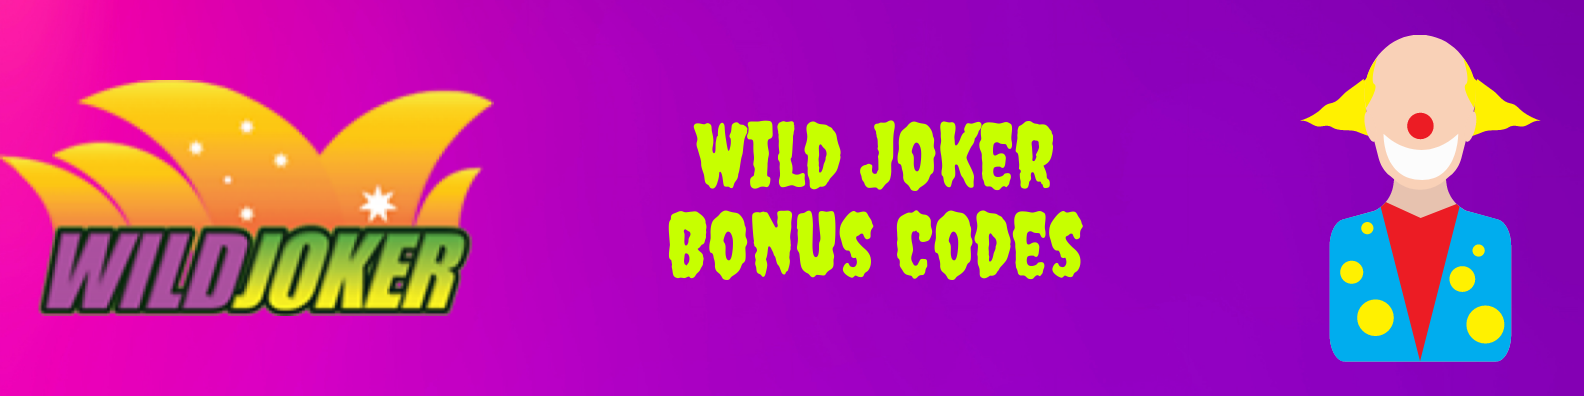 Wild Joker Bonus Codes